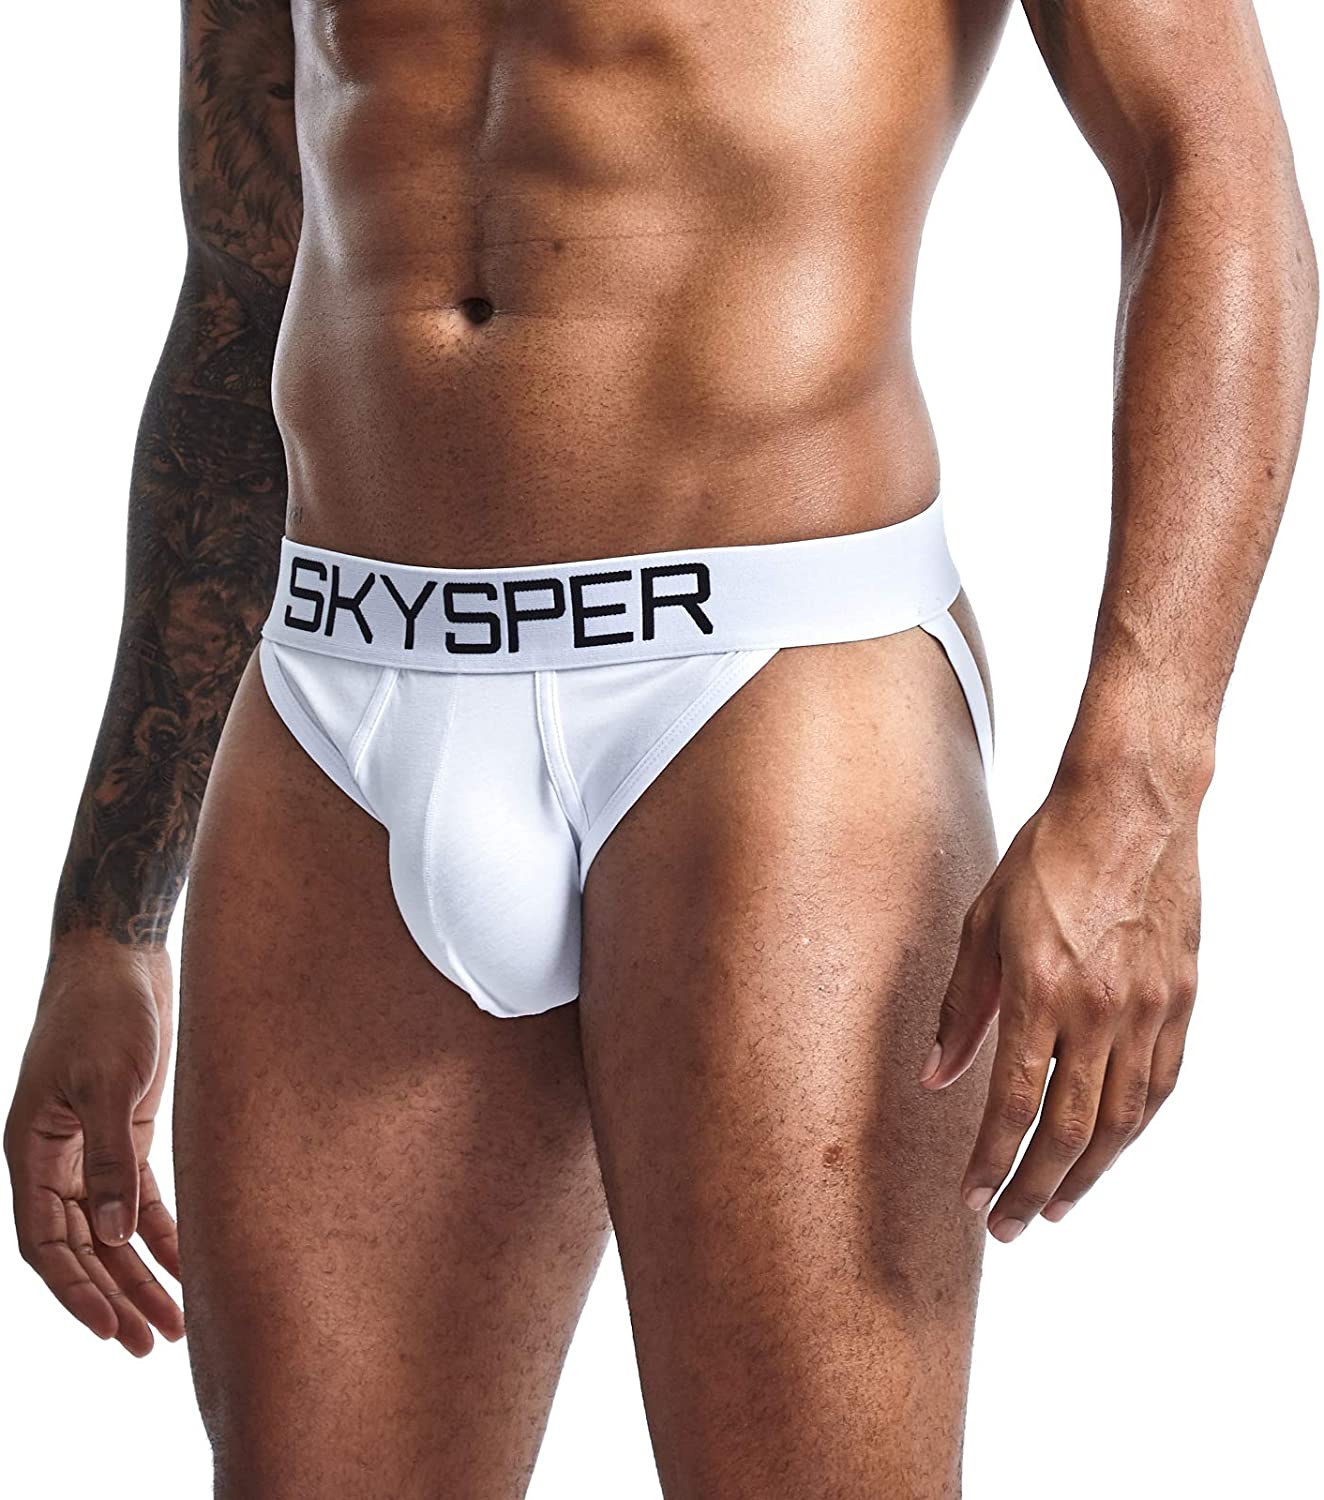 SKYSPER Jockstrap Athletic Supporters for Men Jock Strap Male Underwear 